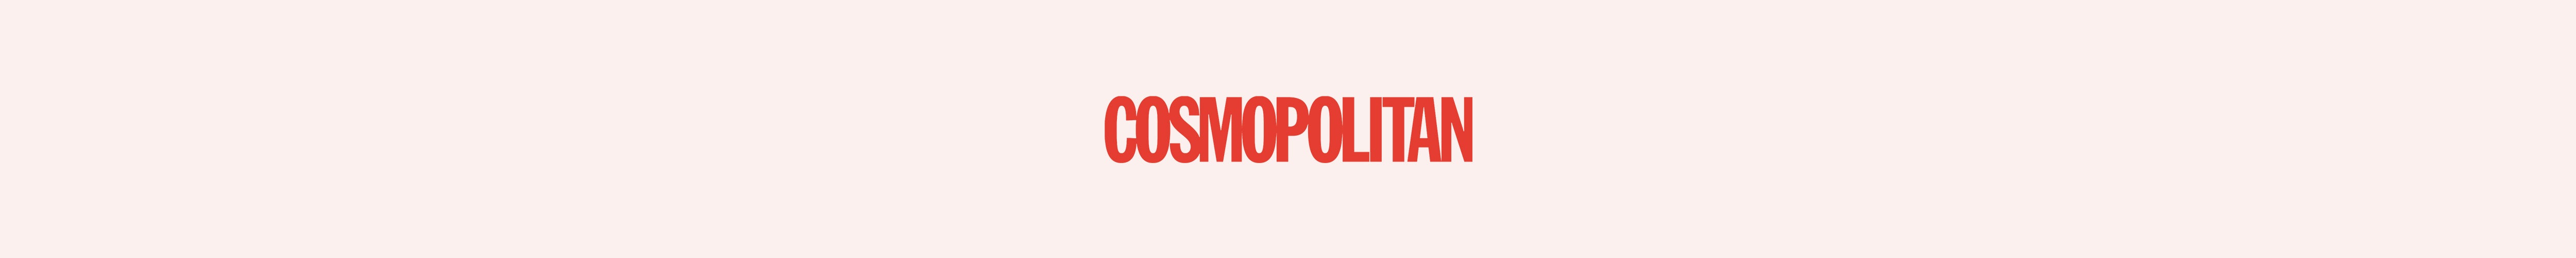 Cosmopolitan - Sole